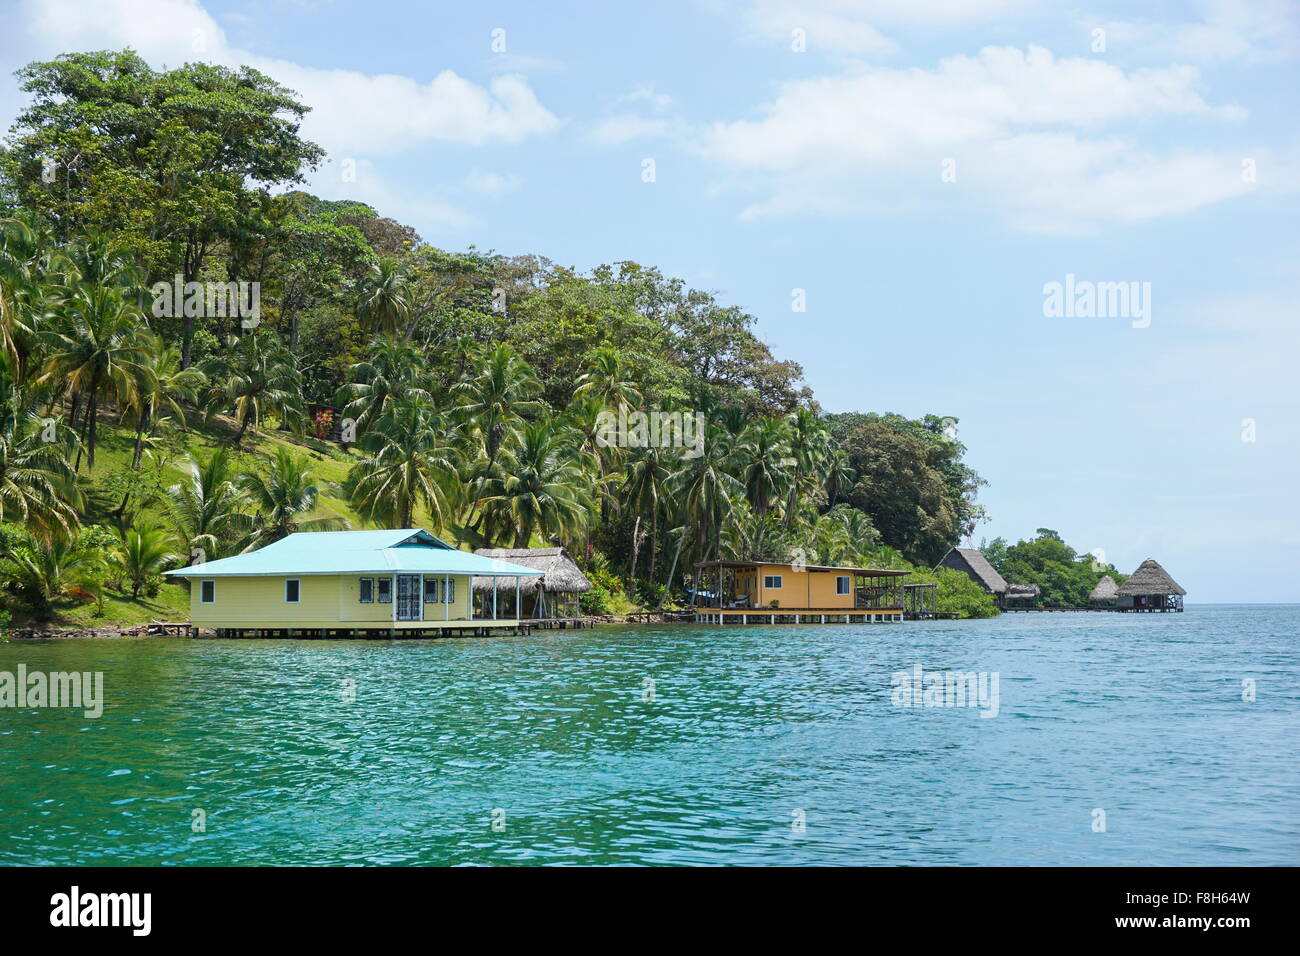 La vegetazione lussureggiante costa tropicale con case e capanne sull'acqua, viste dal mare dei Caraibi, Panama America Centrale Foto Stock